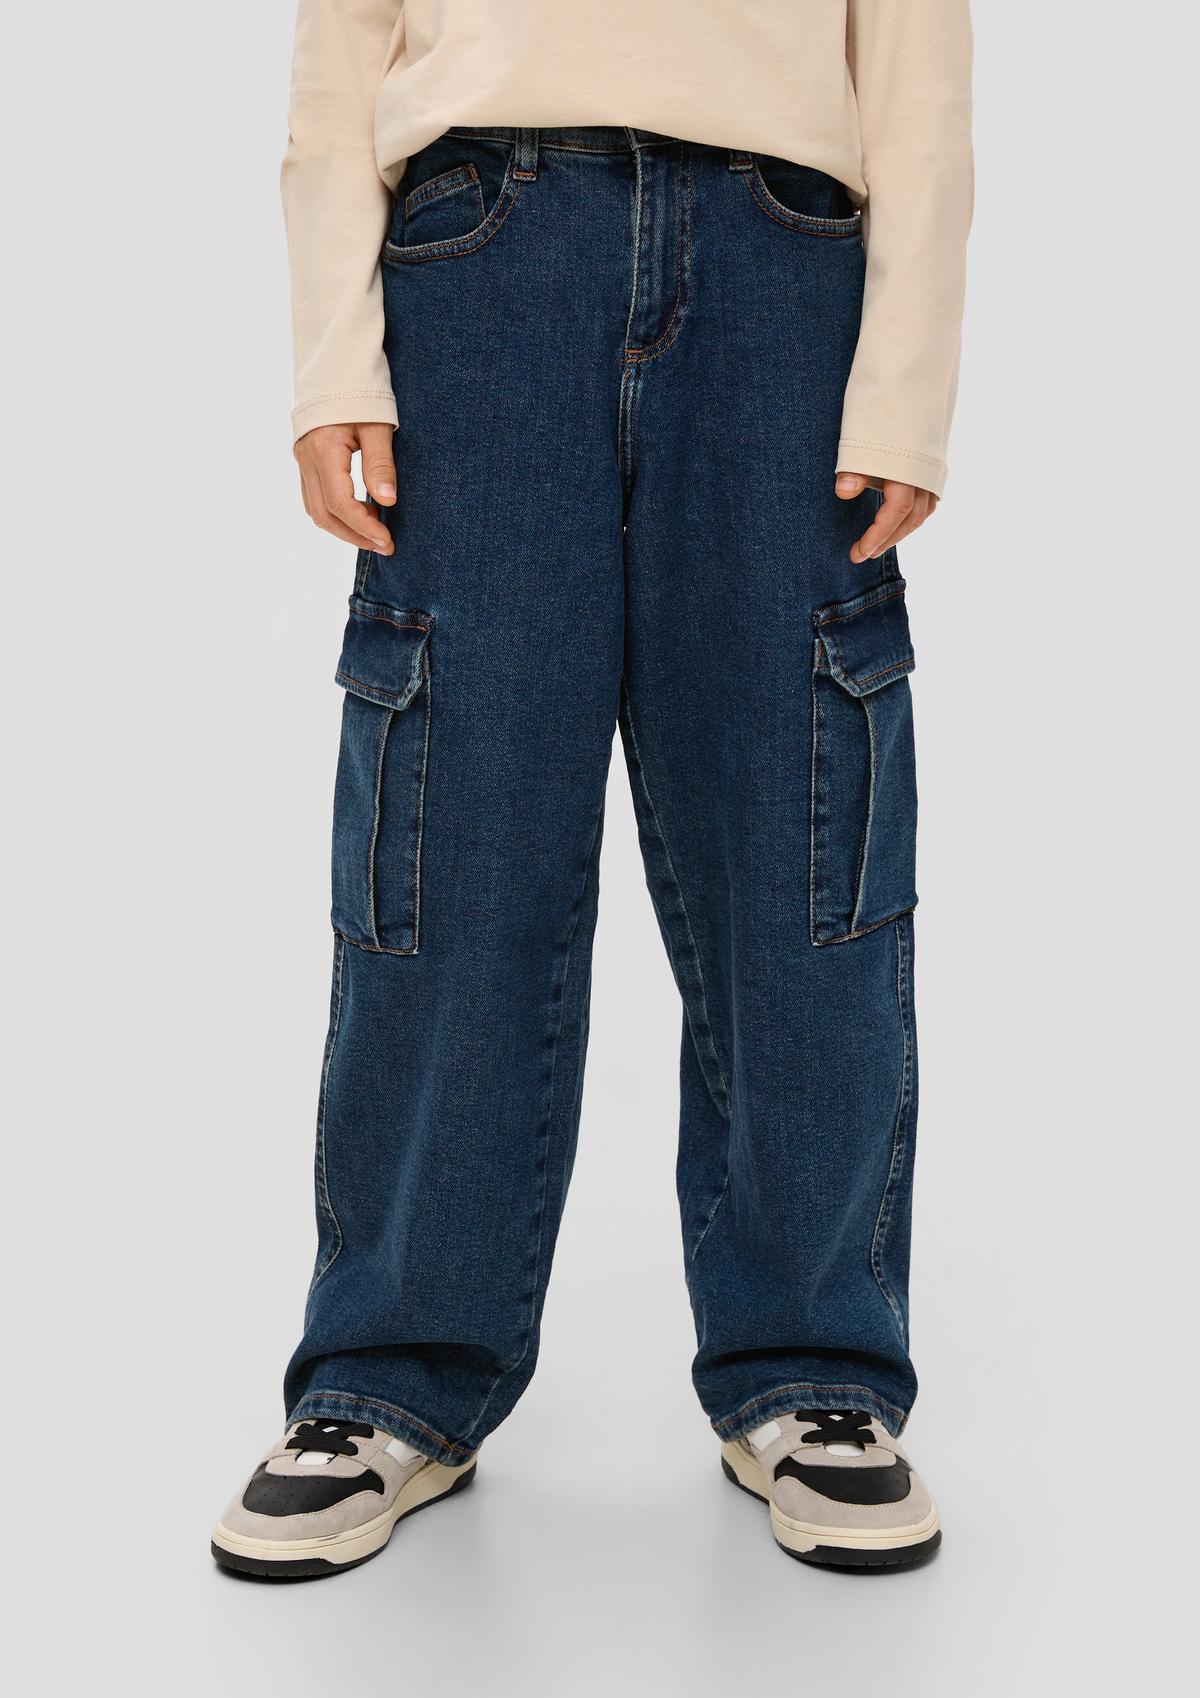 Jeans hlače/kroj Relaxed Fit/Mid Rise/široke hlačnice/veliki žepi